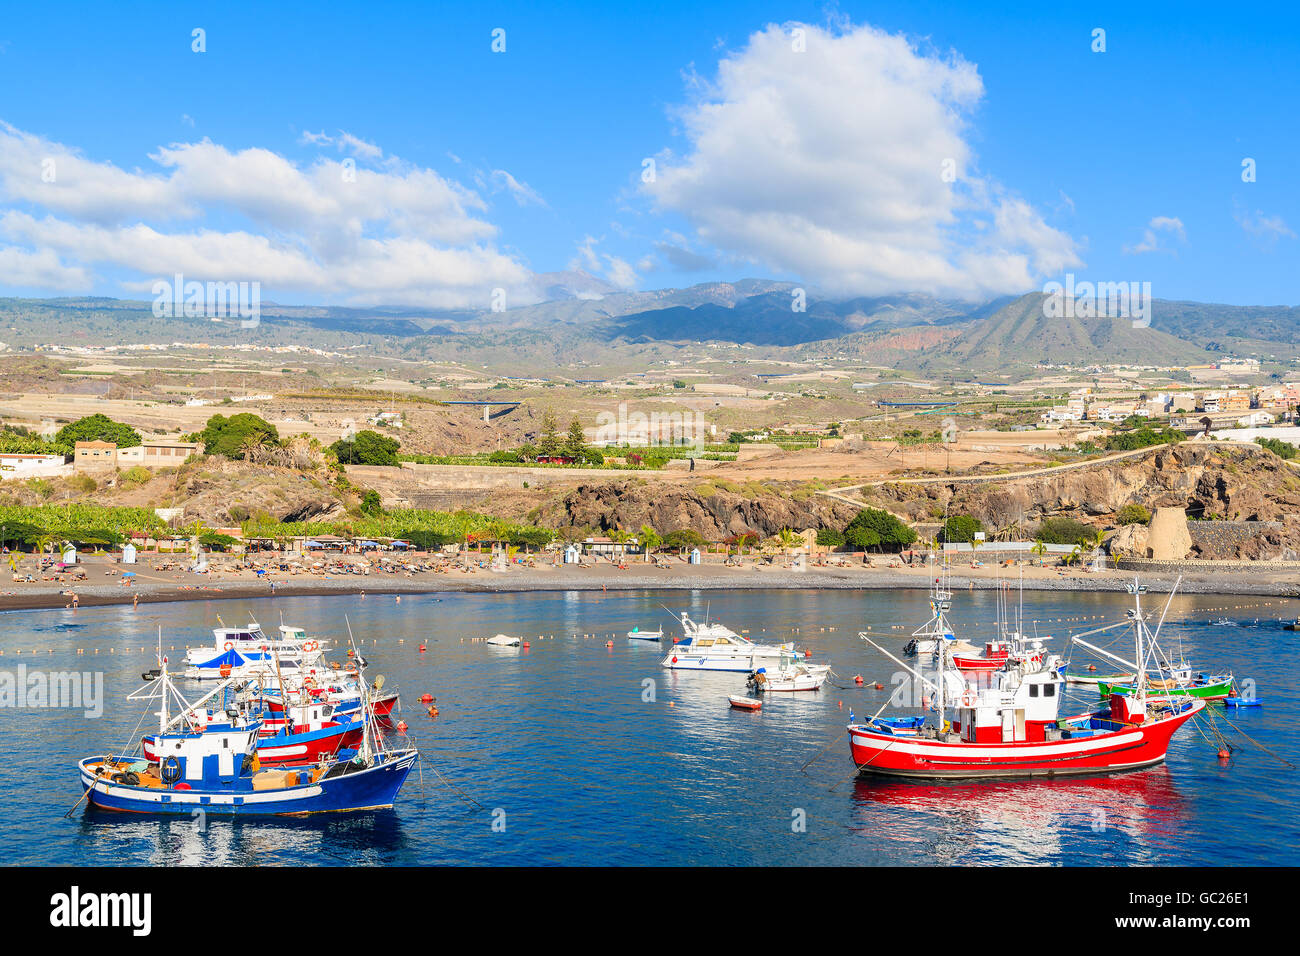 Traditionelle Fischerboote im Hafen von San Juan mit Bergen im Hintergrund, Teneriffa, Kanarische Inseln, Spanien Stockfoto